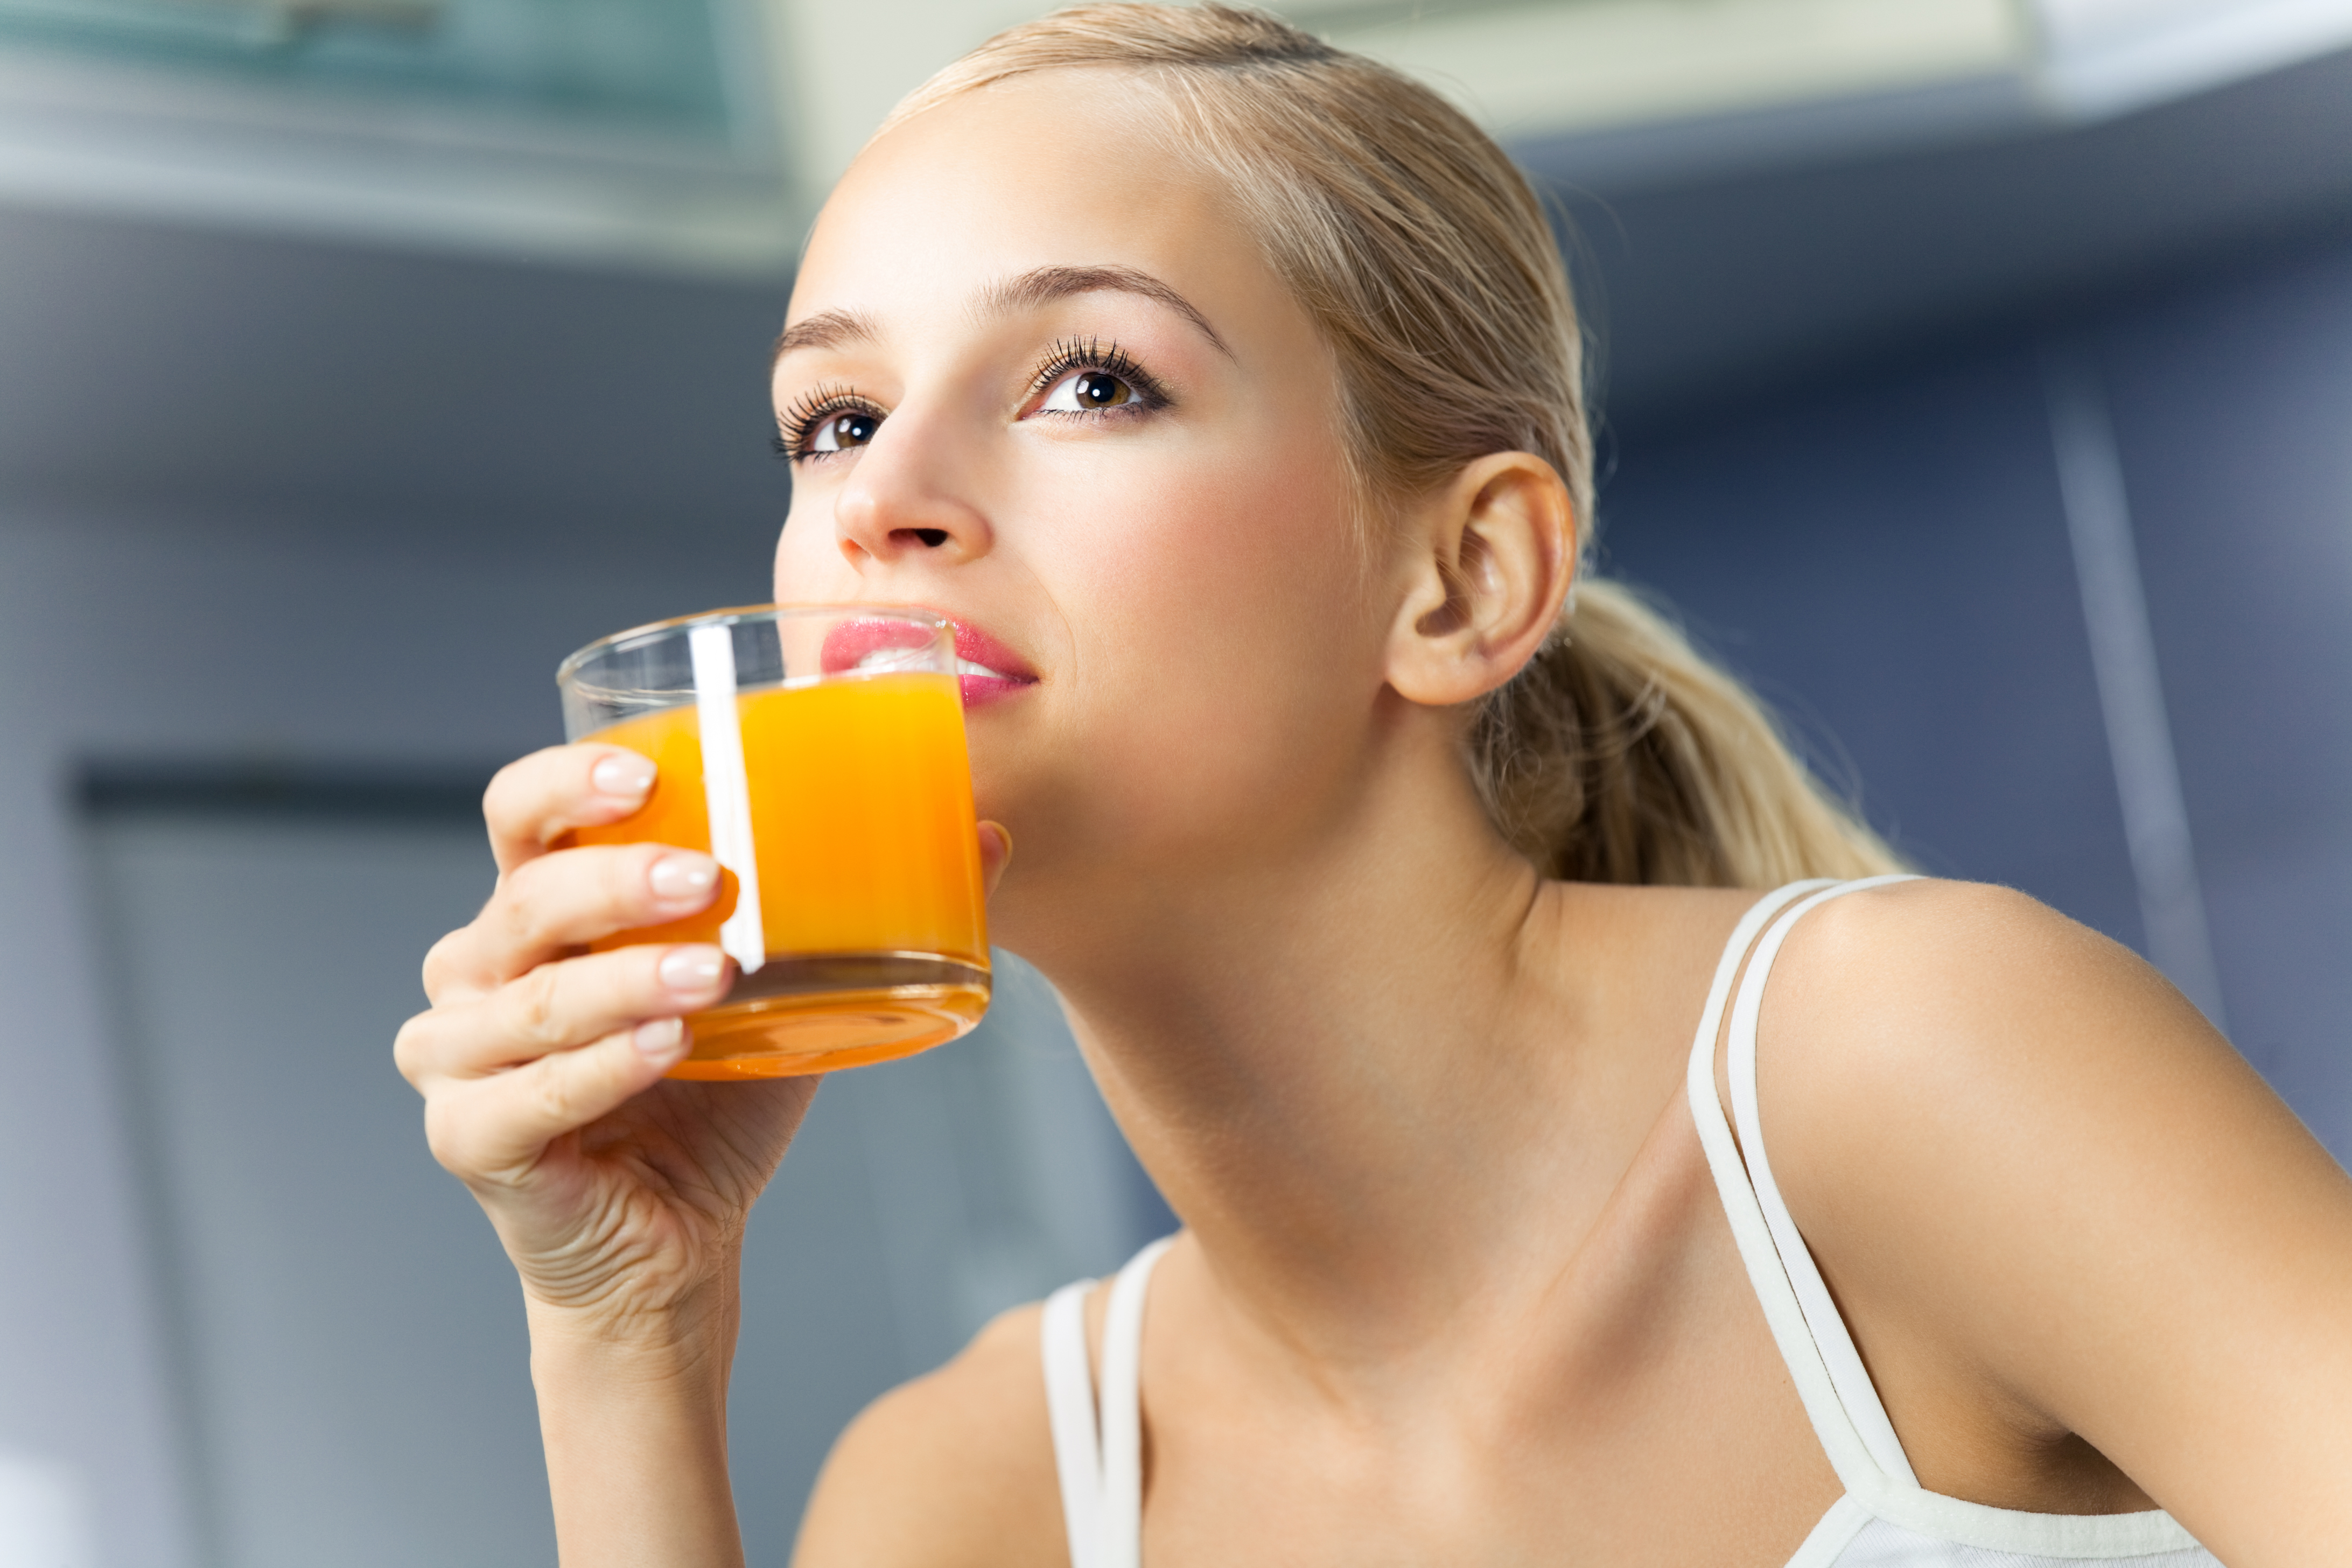 Пьет сок написать. Пить сок. Девушка пьет сок. Левушка пьёт апельсиновый сок. Девушка пьет апельсиновый сок.